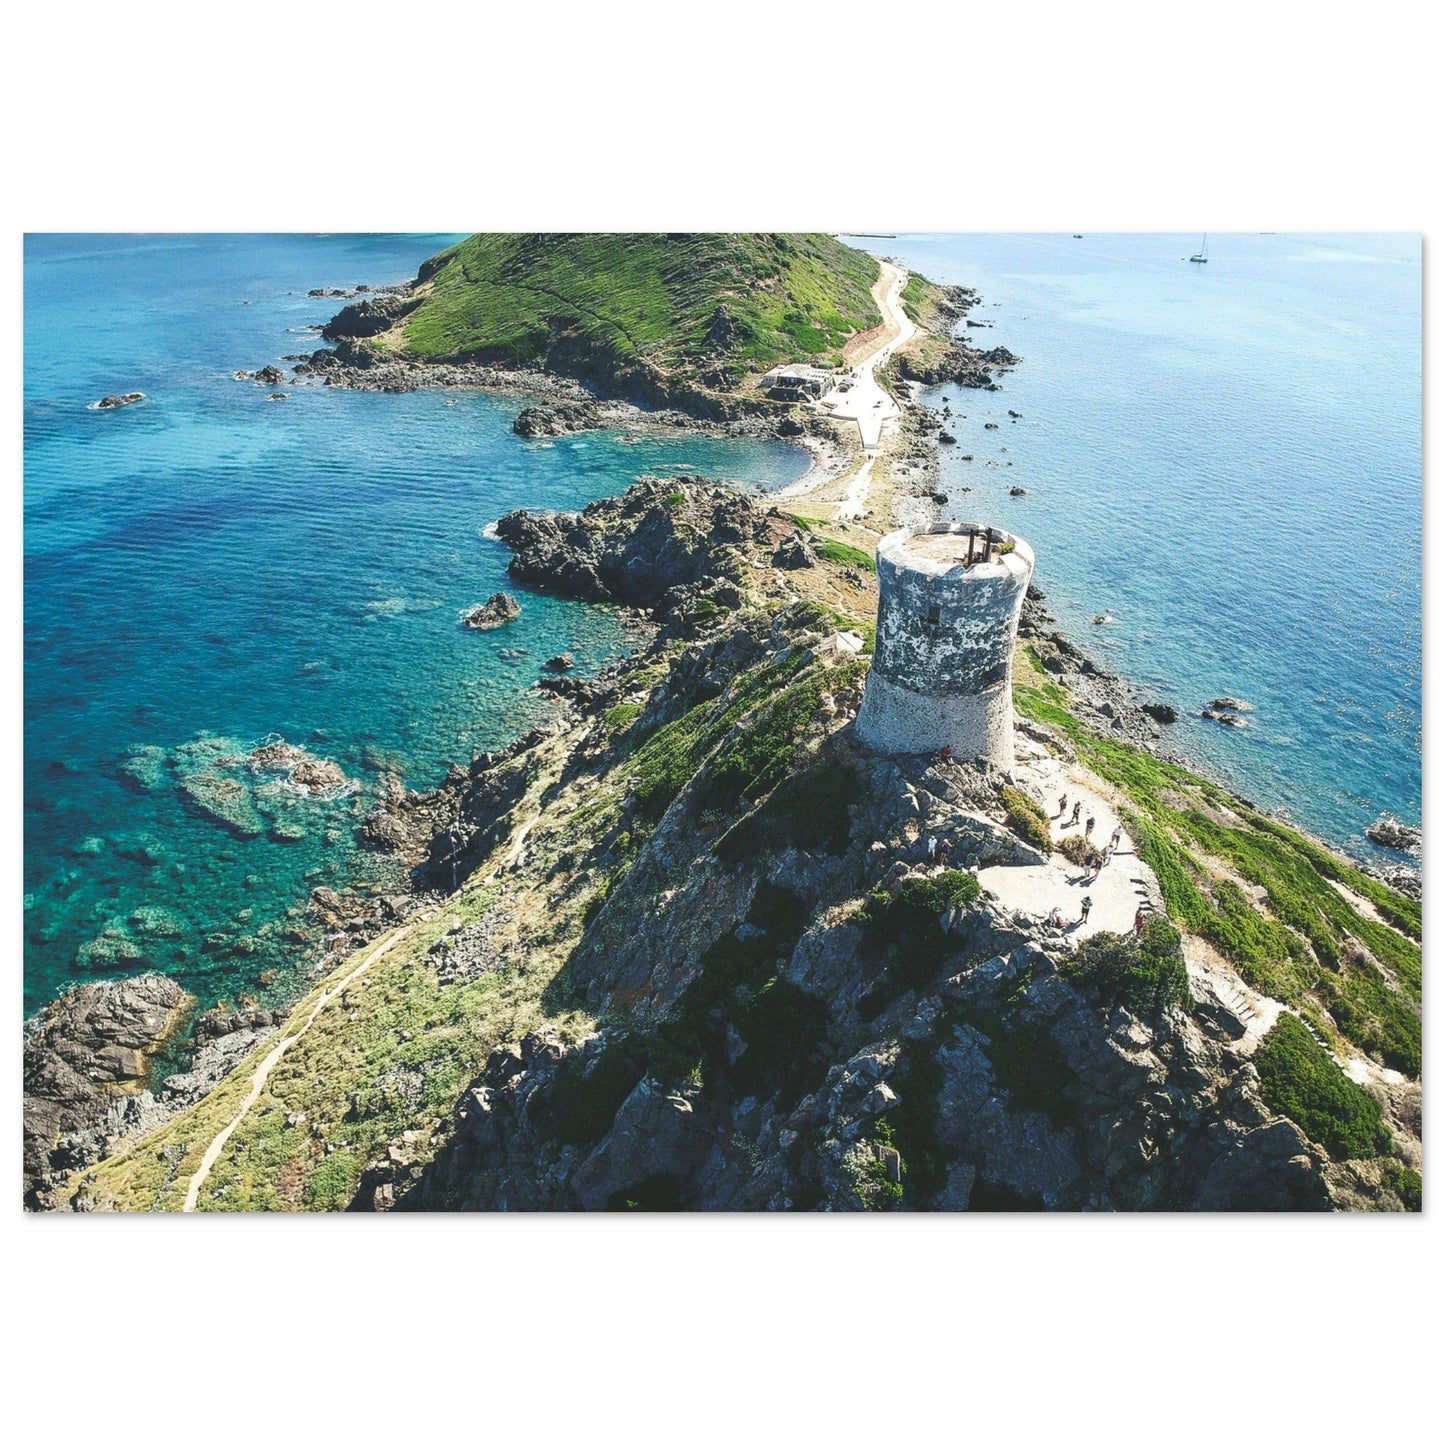 Vente Photo de la Tour de la parata, Corse - Tableau photo paysage